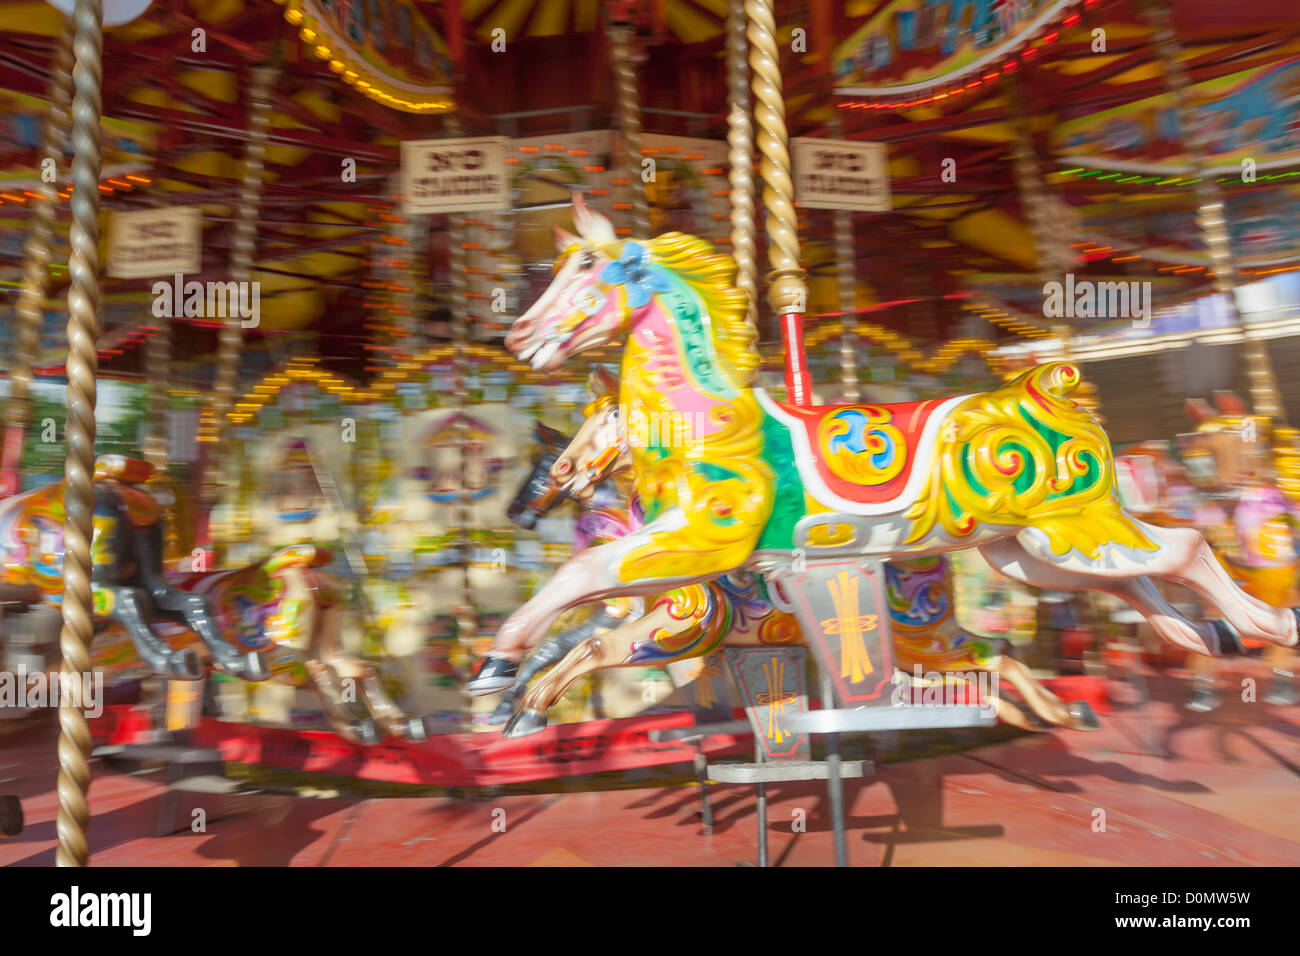 Cheval coloré sur un carrousel fairground ride, UK Banque D'Images